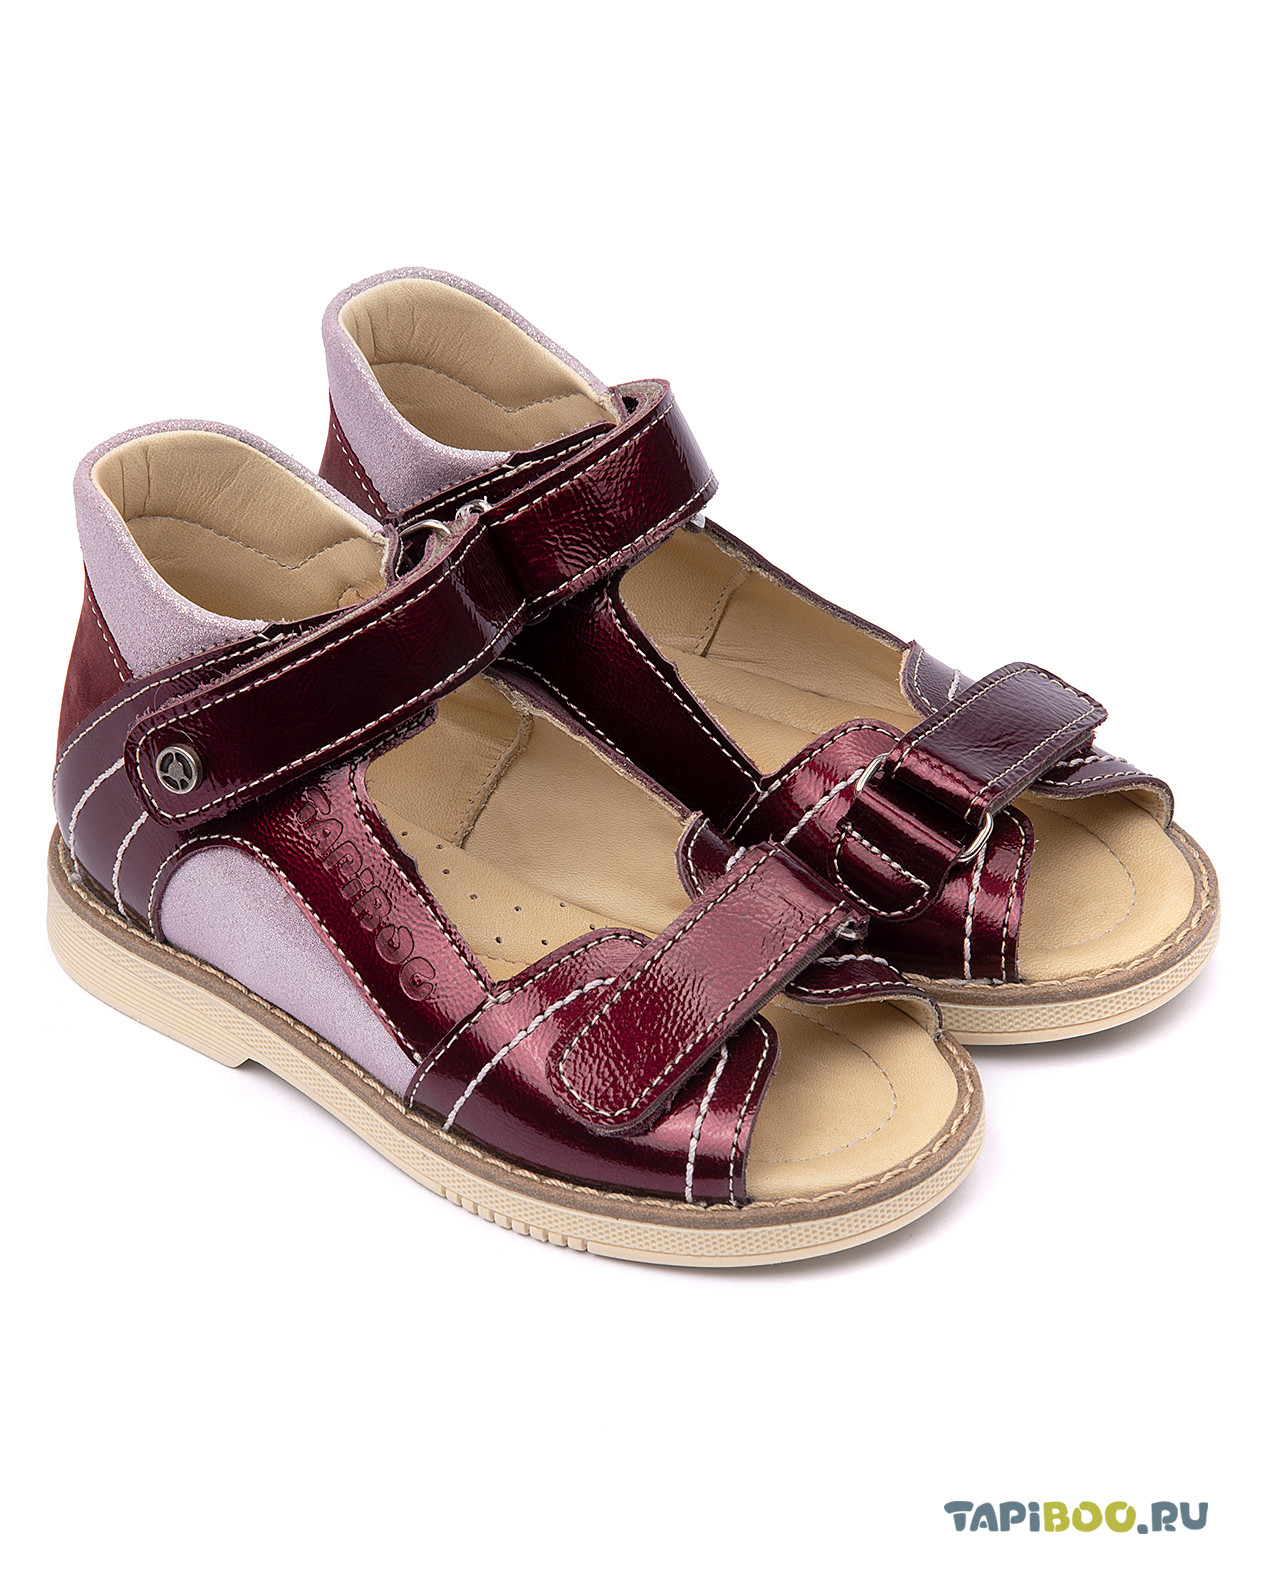 Сандалии детские Tapiboo МАК (72612, 25) туфли детские tapiboo мак 77009 35